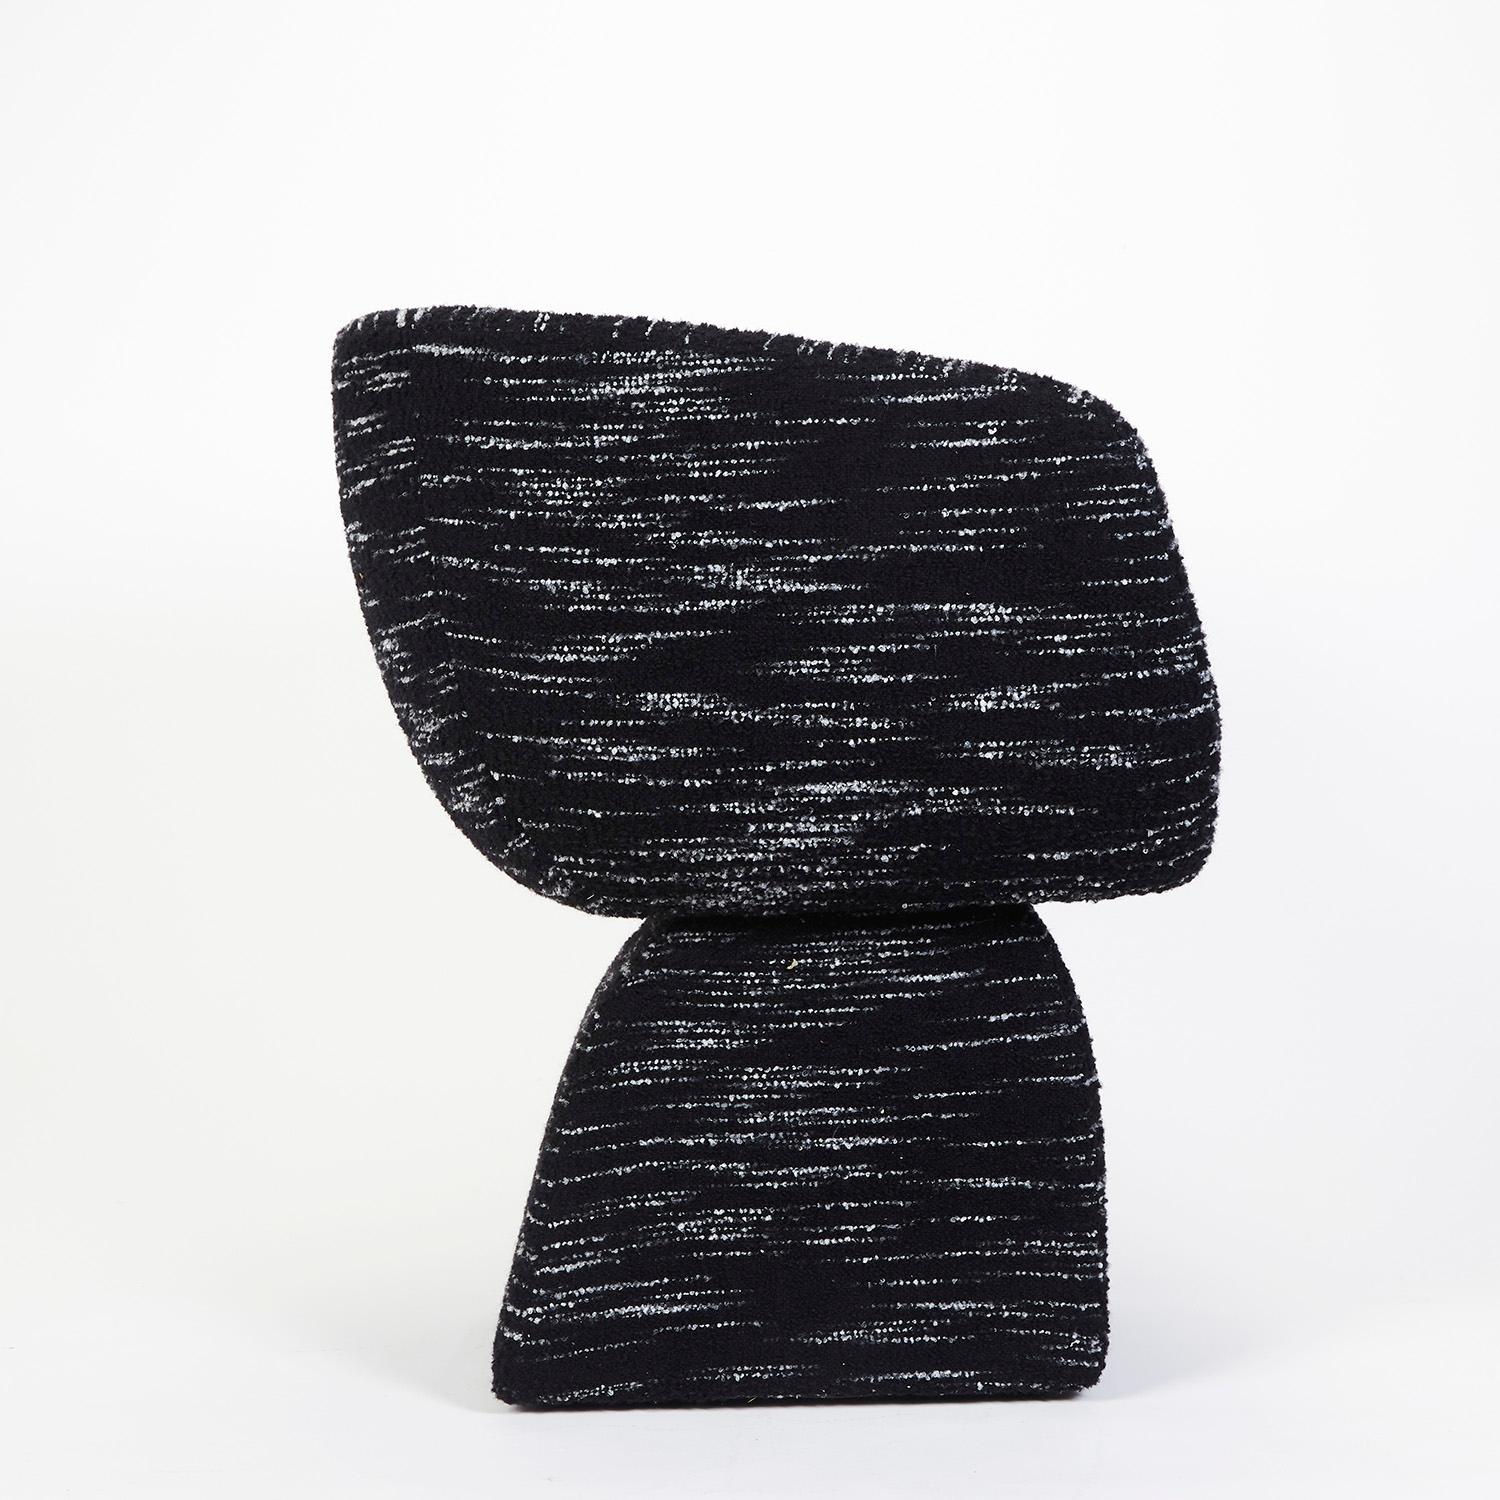 Oscar Stuhl, gepolstert mit einem speziellen Bouclé, handgefertigt in Portugal von Duistt

Inspiriert von den poetisch geschwungenen Linien der Architektur Oscar Niemeyers, besticht der Stuhl Oscar durch seine sinnlichen und frei fließenden Kurven.